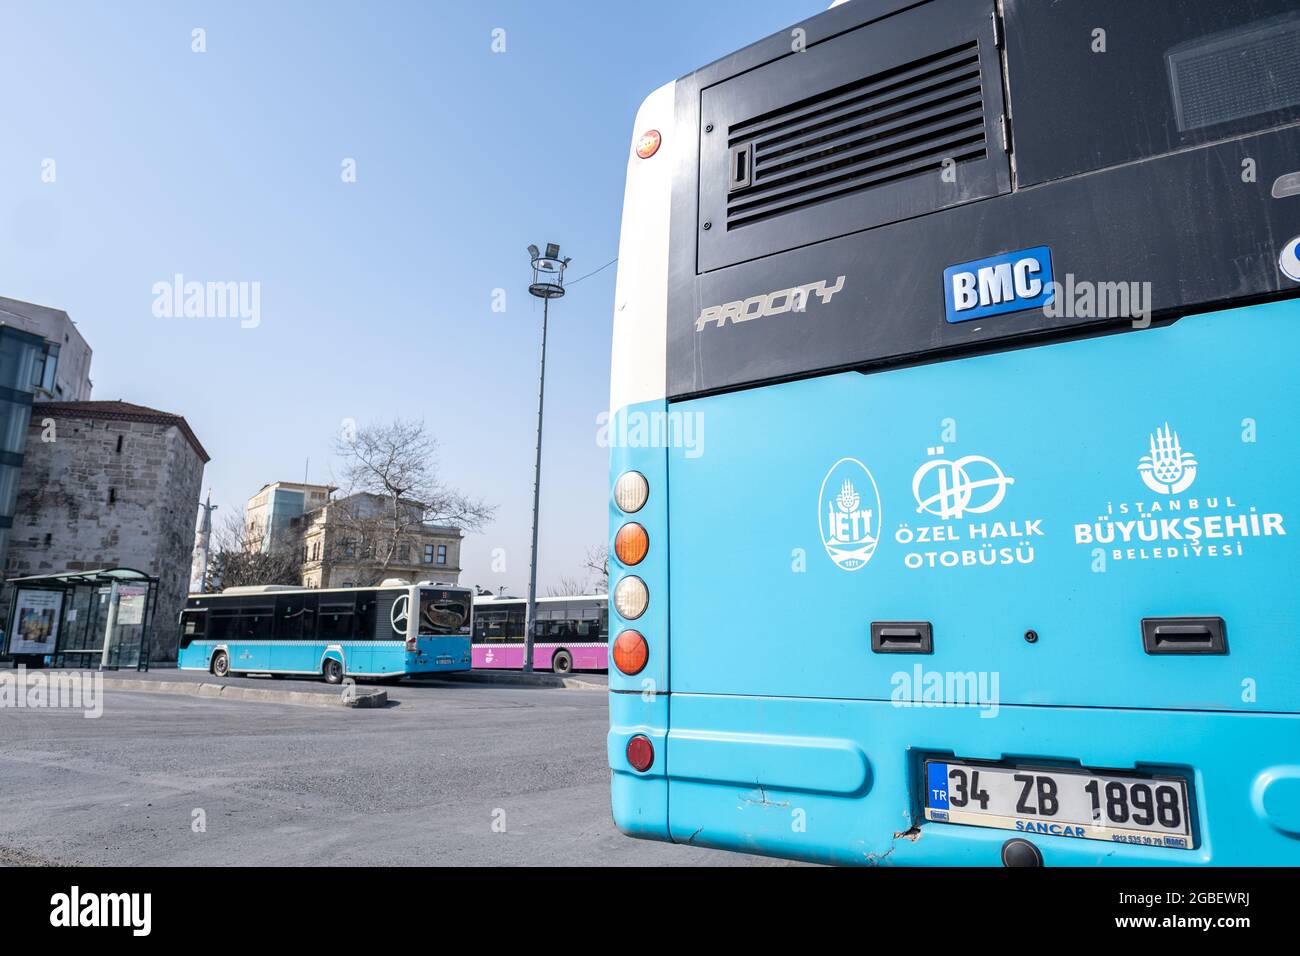 Eminonu, Istanbul, Turchia - 02.27.2021: Vista del deposito degli autobus da dietro un blu autobus comunale nella zona costiera di Eminonu con spazio copia Foto Stock